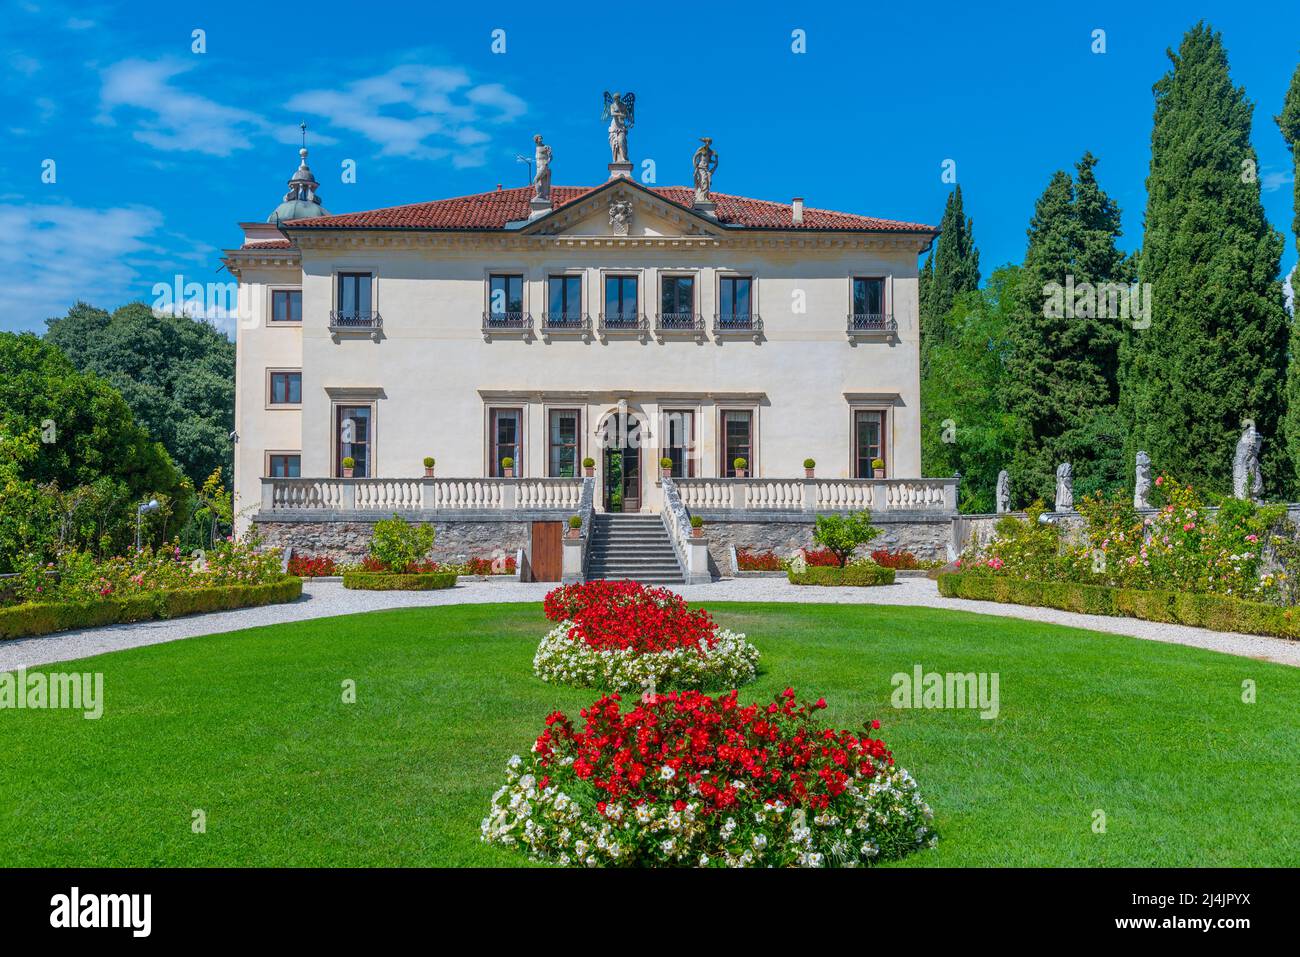 Palazzina di Villa Valmarana ai Nani nel comune italiano di Vicenza. Foto Stock